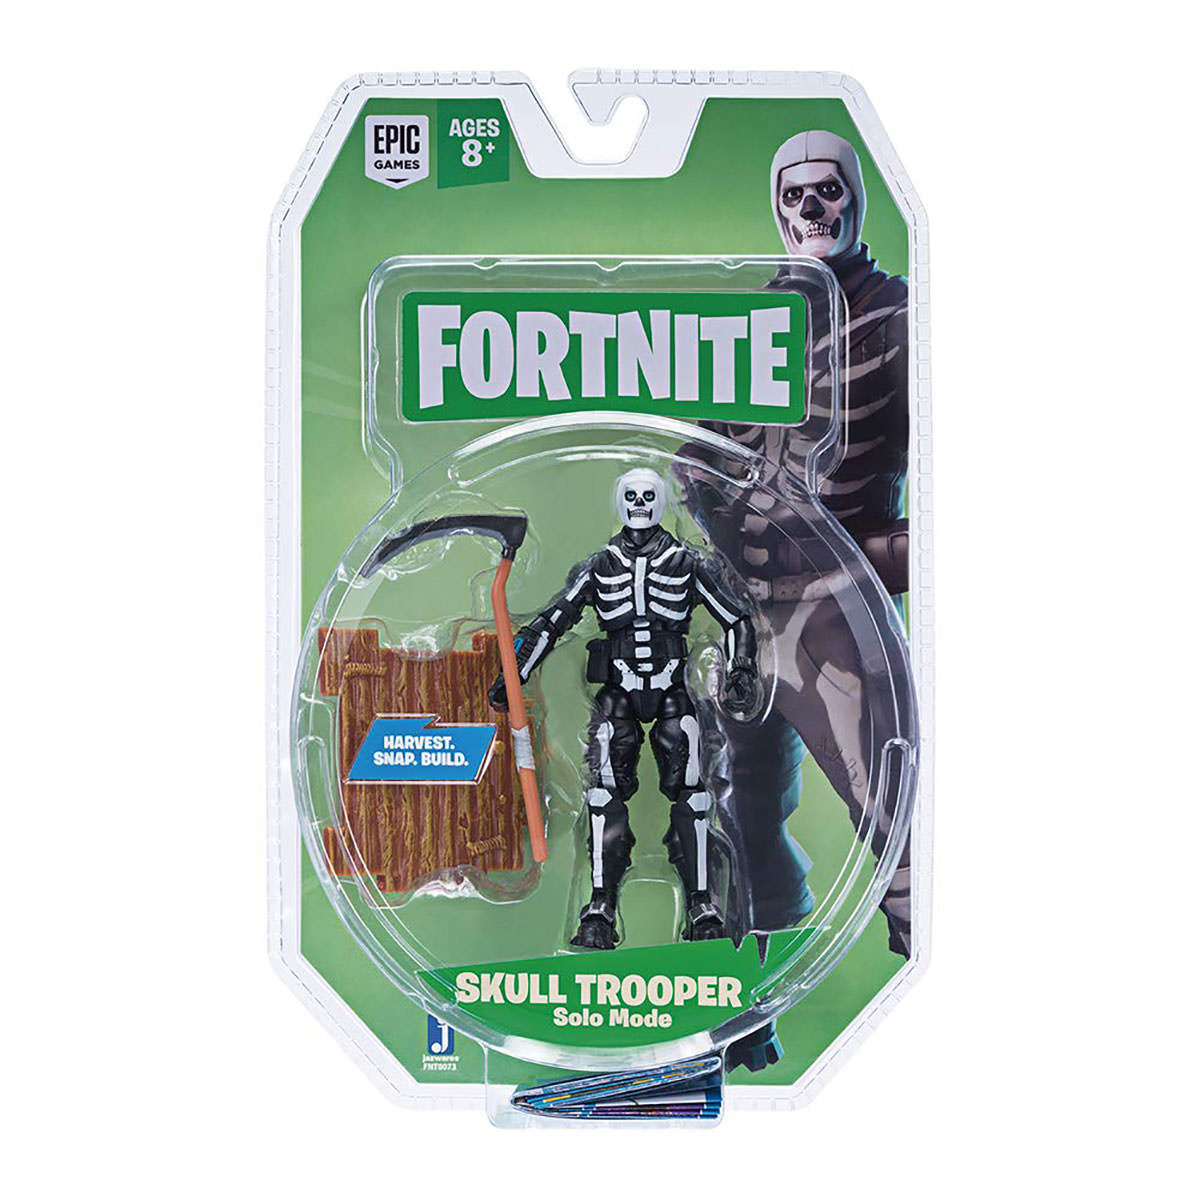 Fortnite Skull Trooper 4" Solo Mode Figure Pack